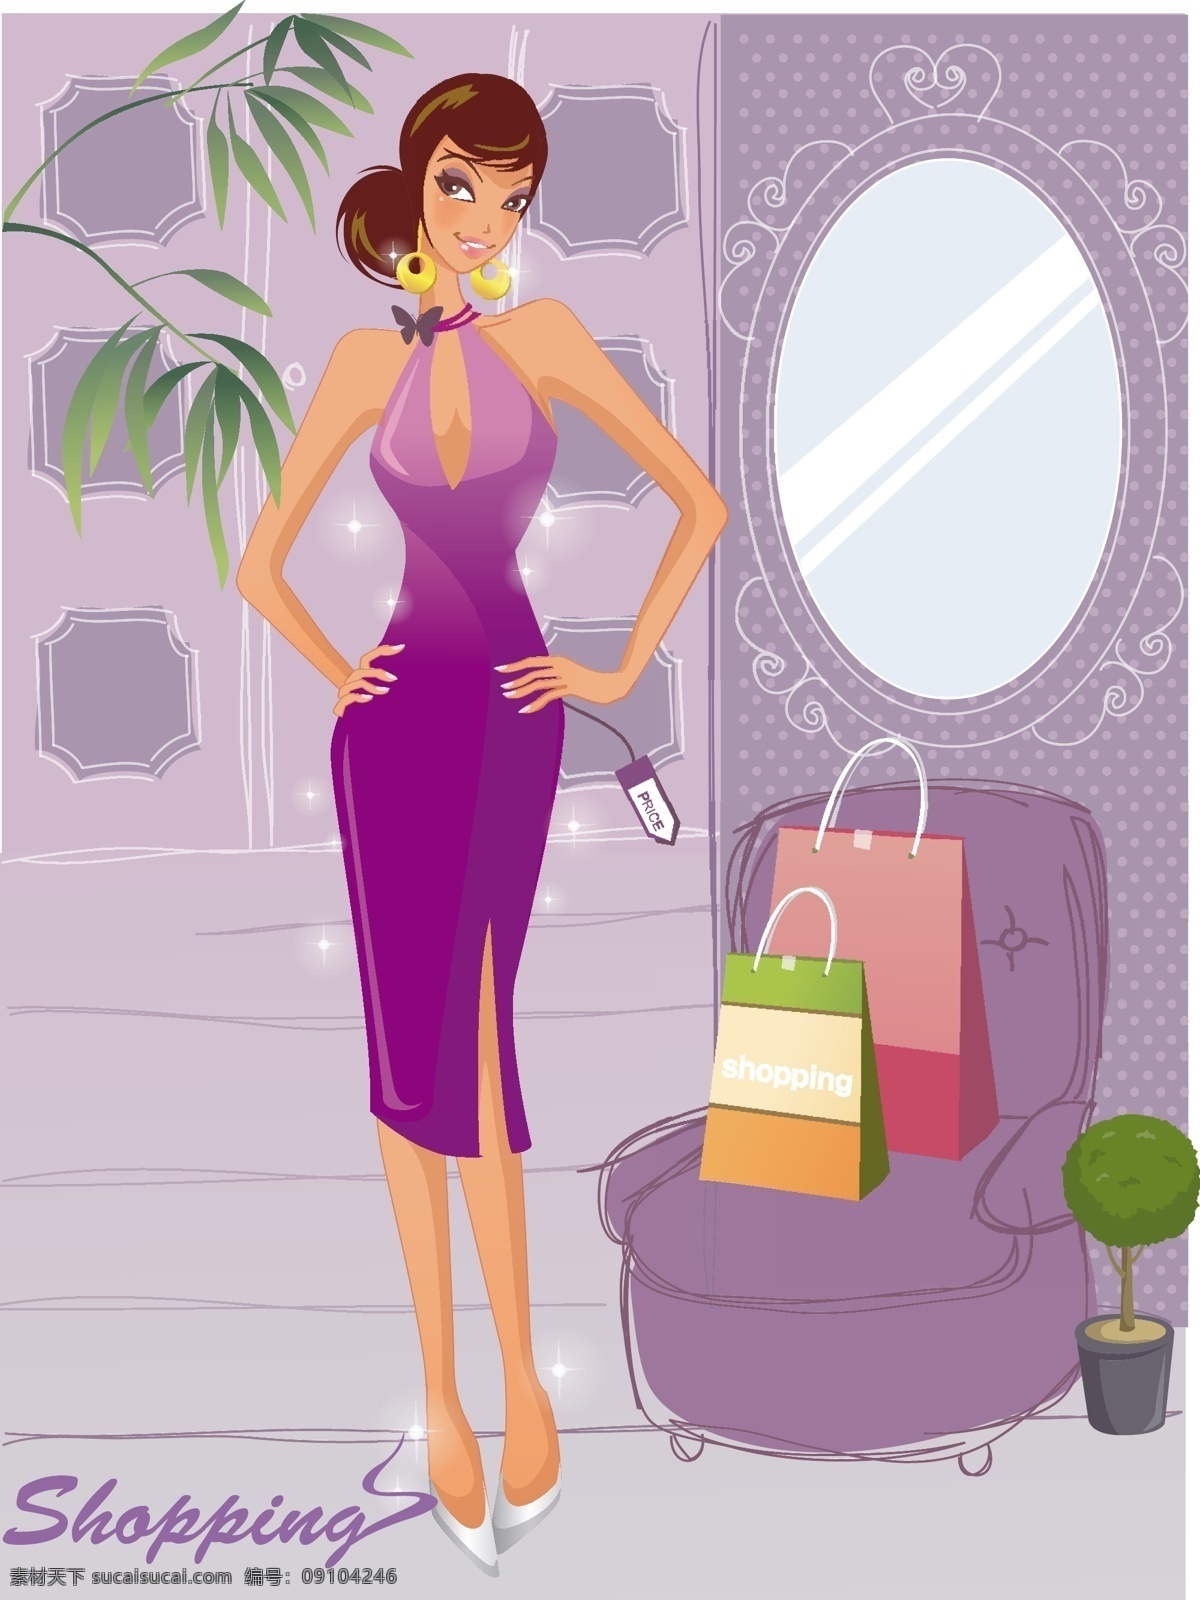 时尚 女性 购物 ai格式 袋子 镜子 旗袍 沙发 室内 矢量图 矢量人物